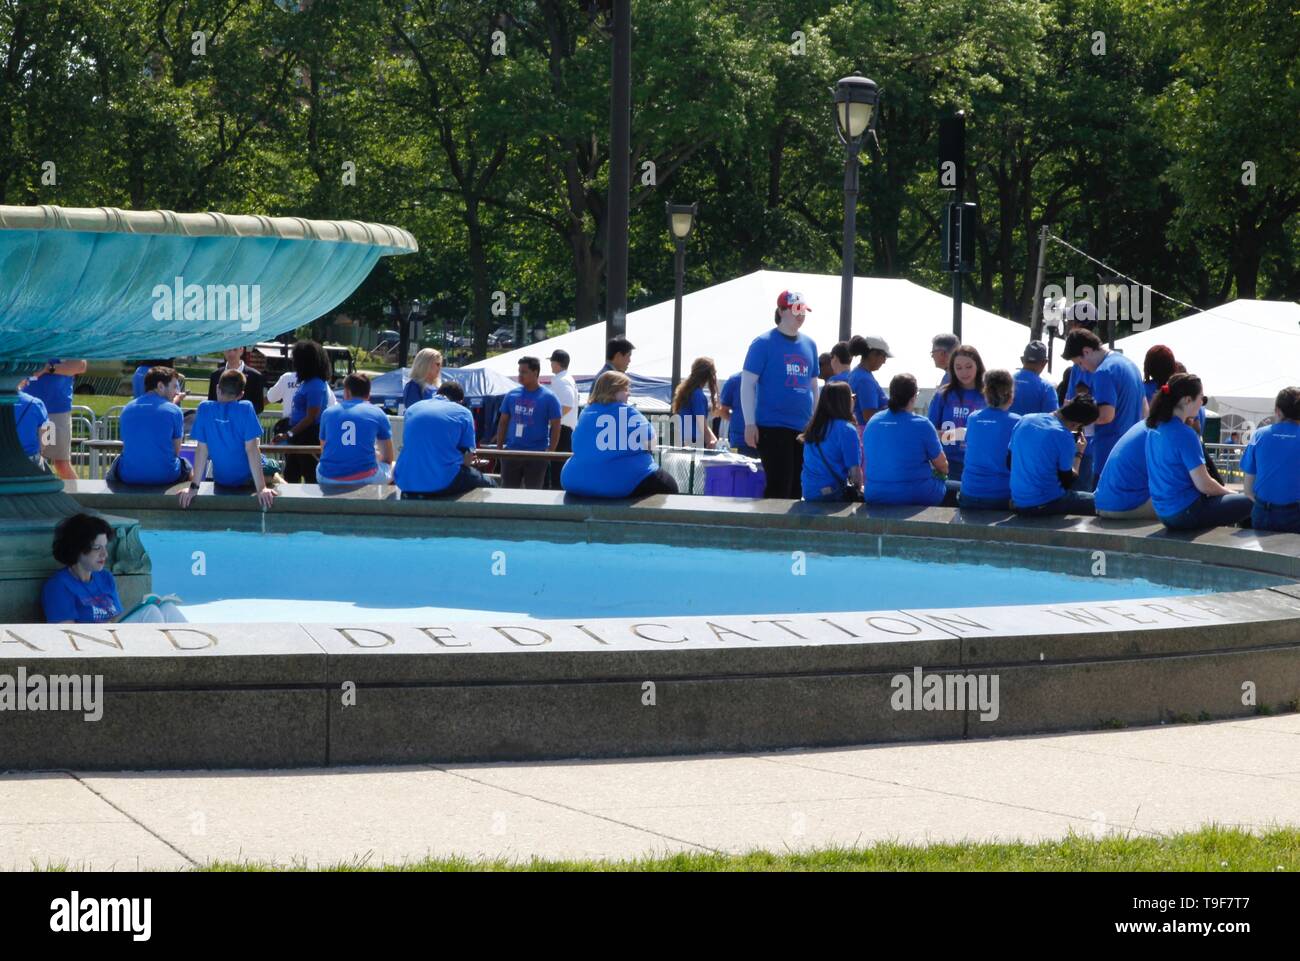 Philadelphia, PA, USA - Mai 18, 2019 : Biden Campagne 2020 bénévoles se rassemblent devant une piscine rally sur la Benjamin Franklin Parkway à Philadelphie, Pennsylvanie. Banque D'Images